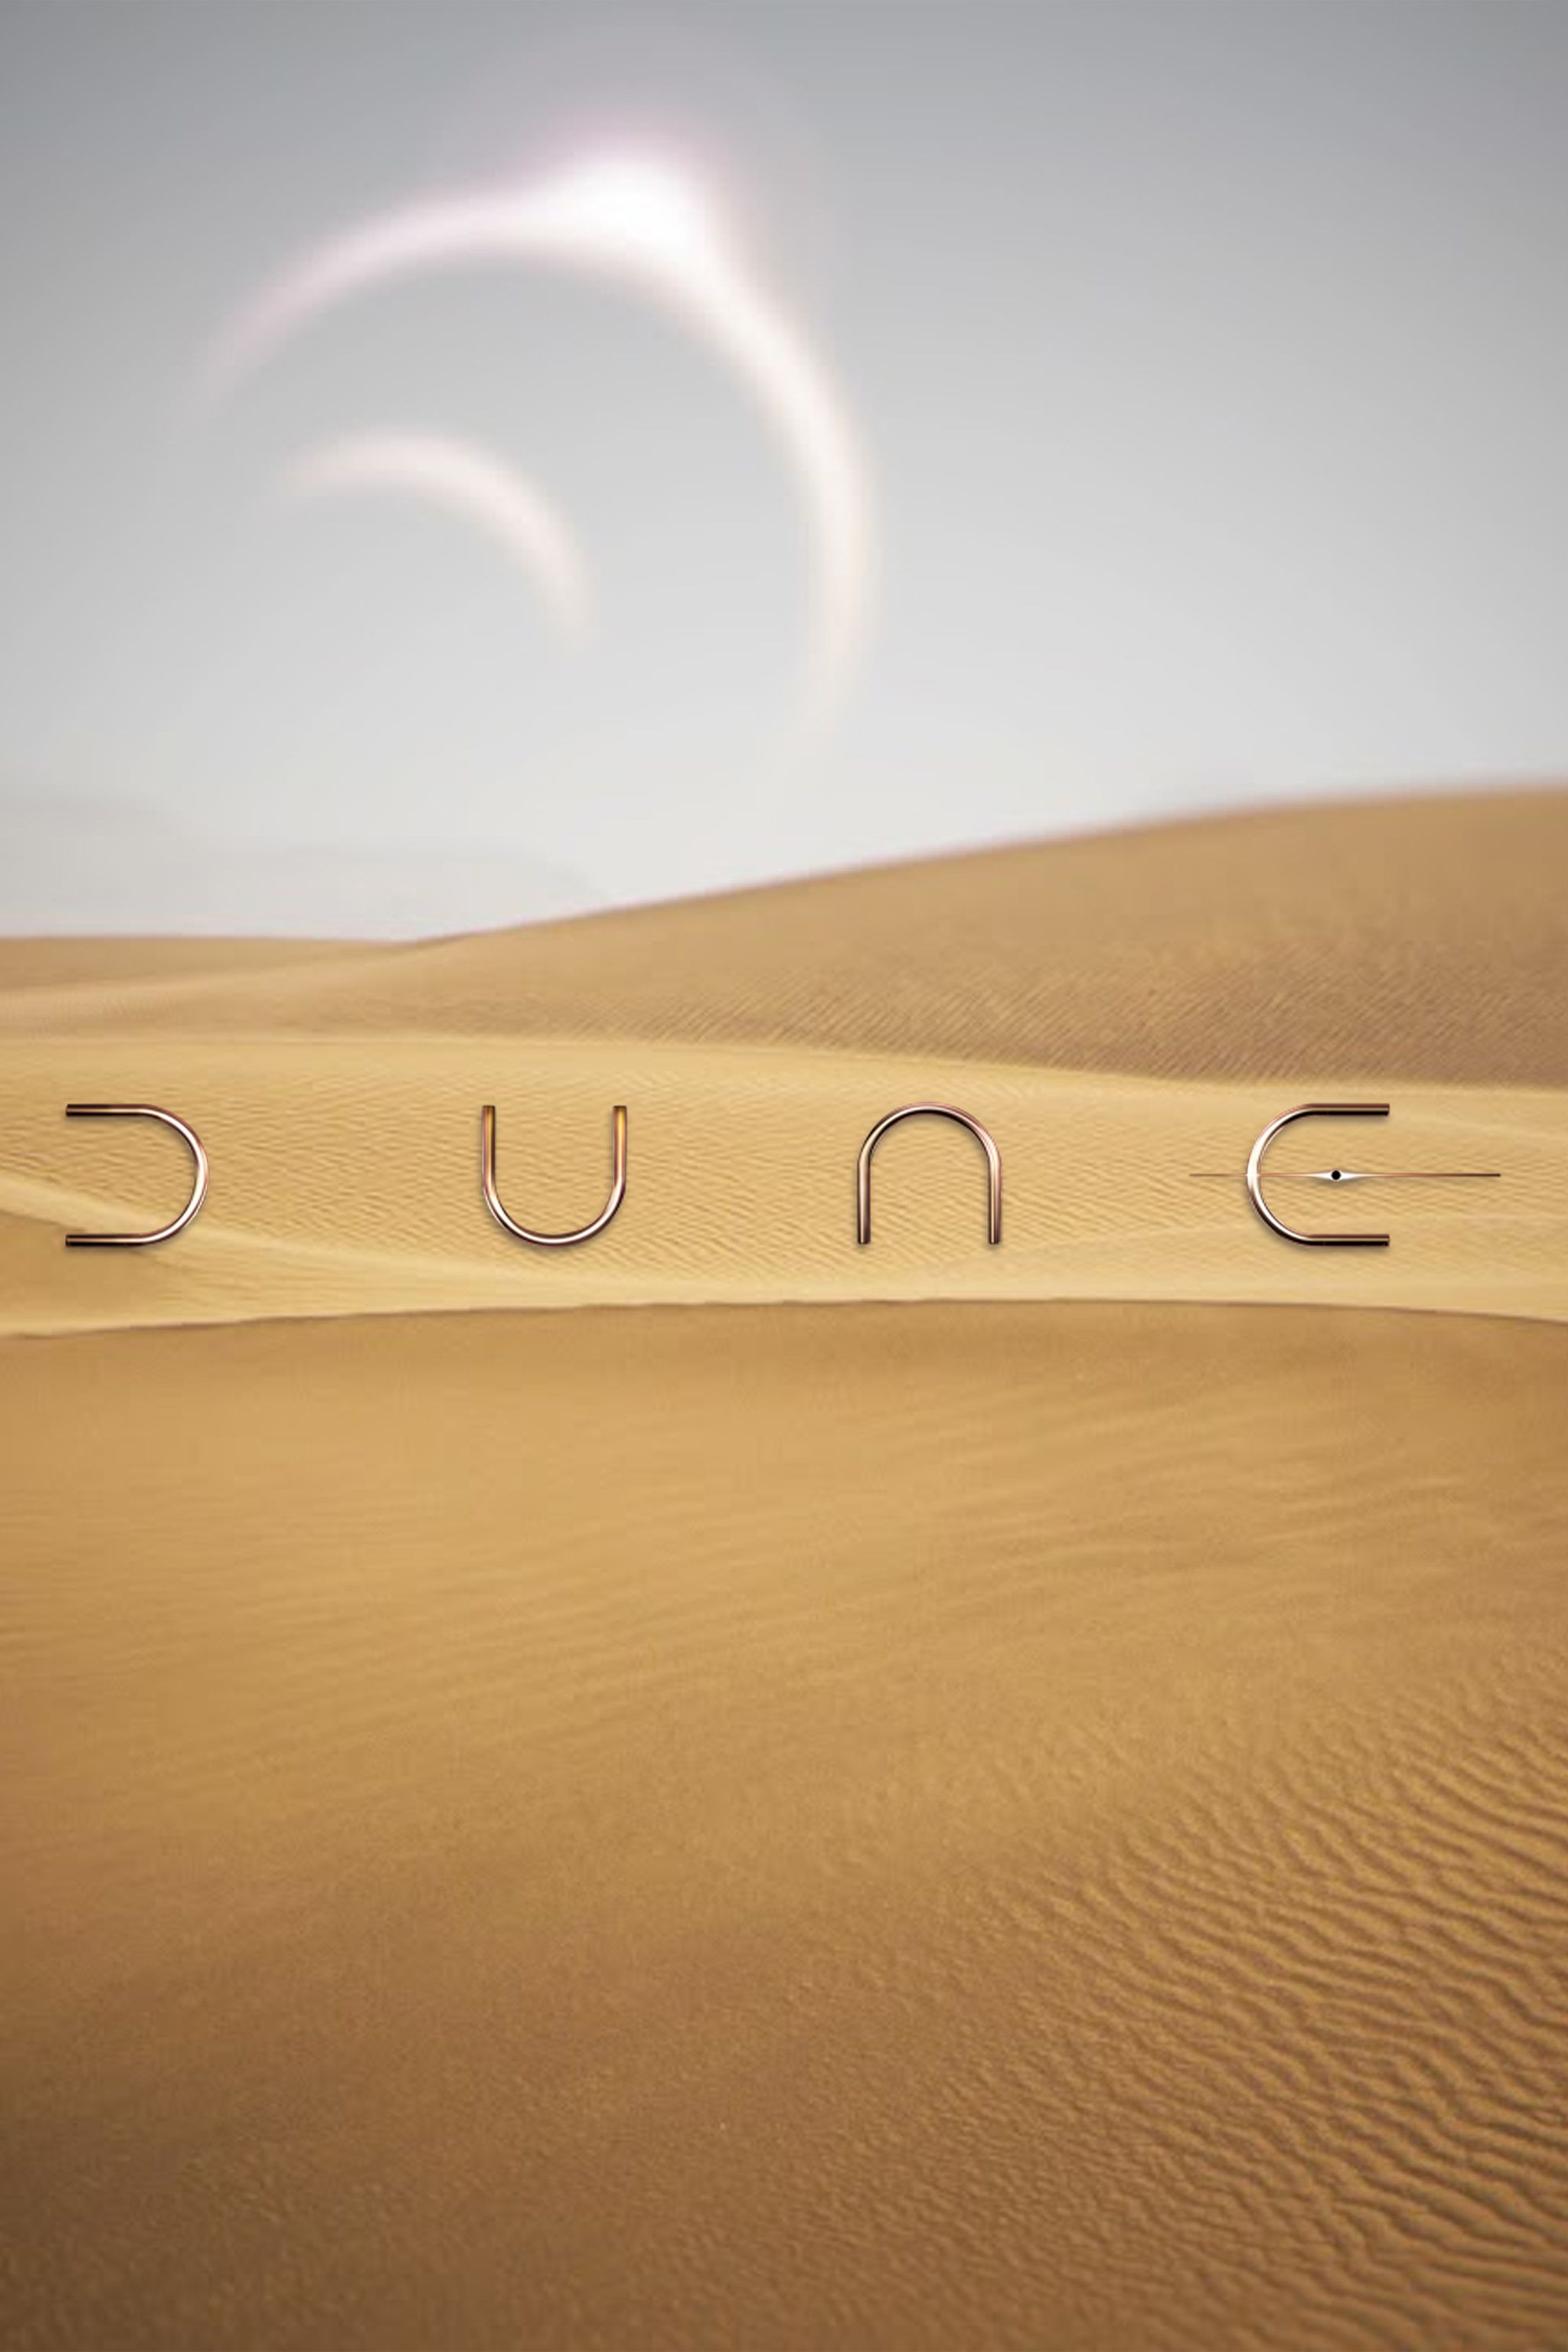 dune-series-franchise-books-film-game